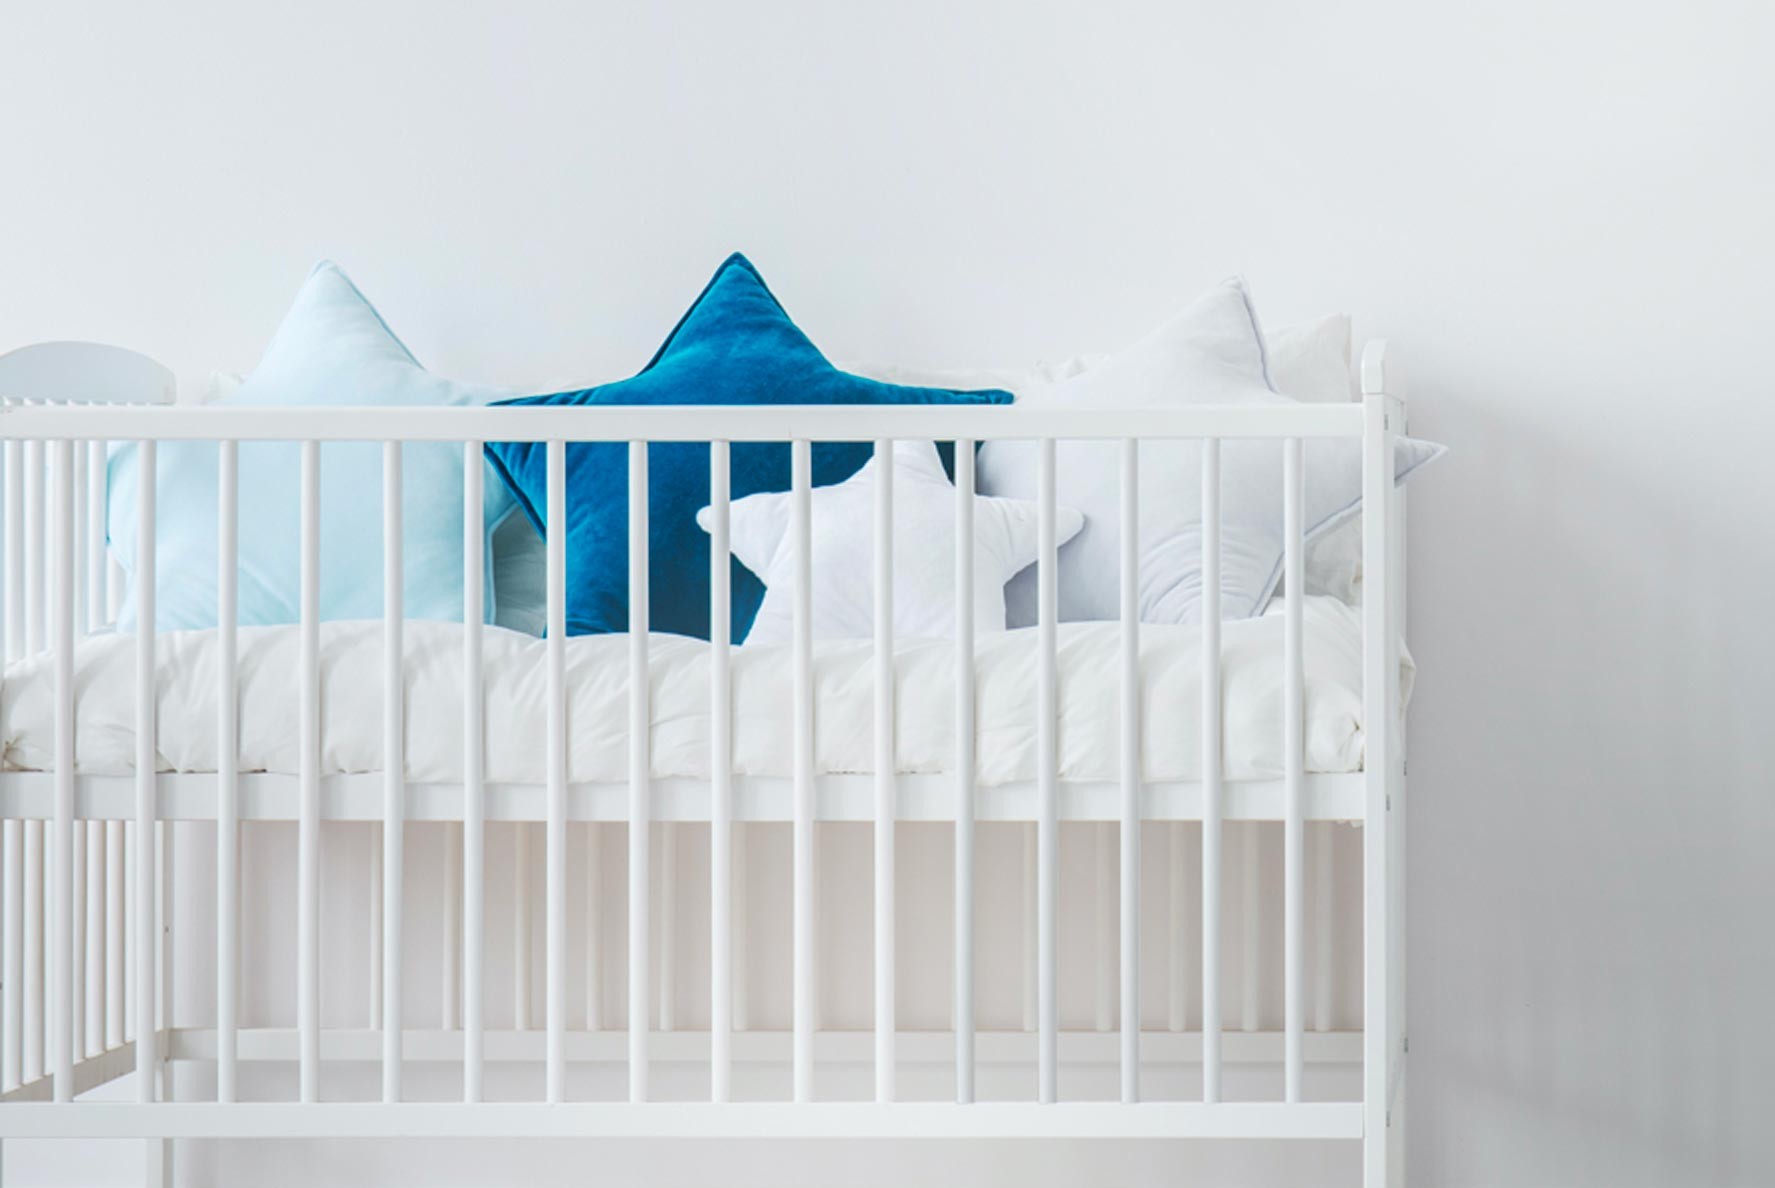 Ce qu'il faut savoir pour choisir le bon drap housse pour le lit de son bébé  • Blog